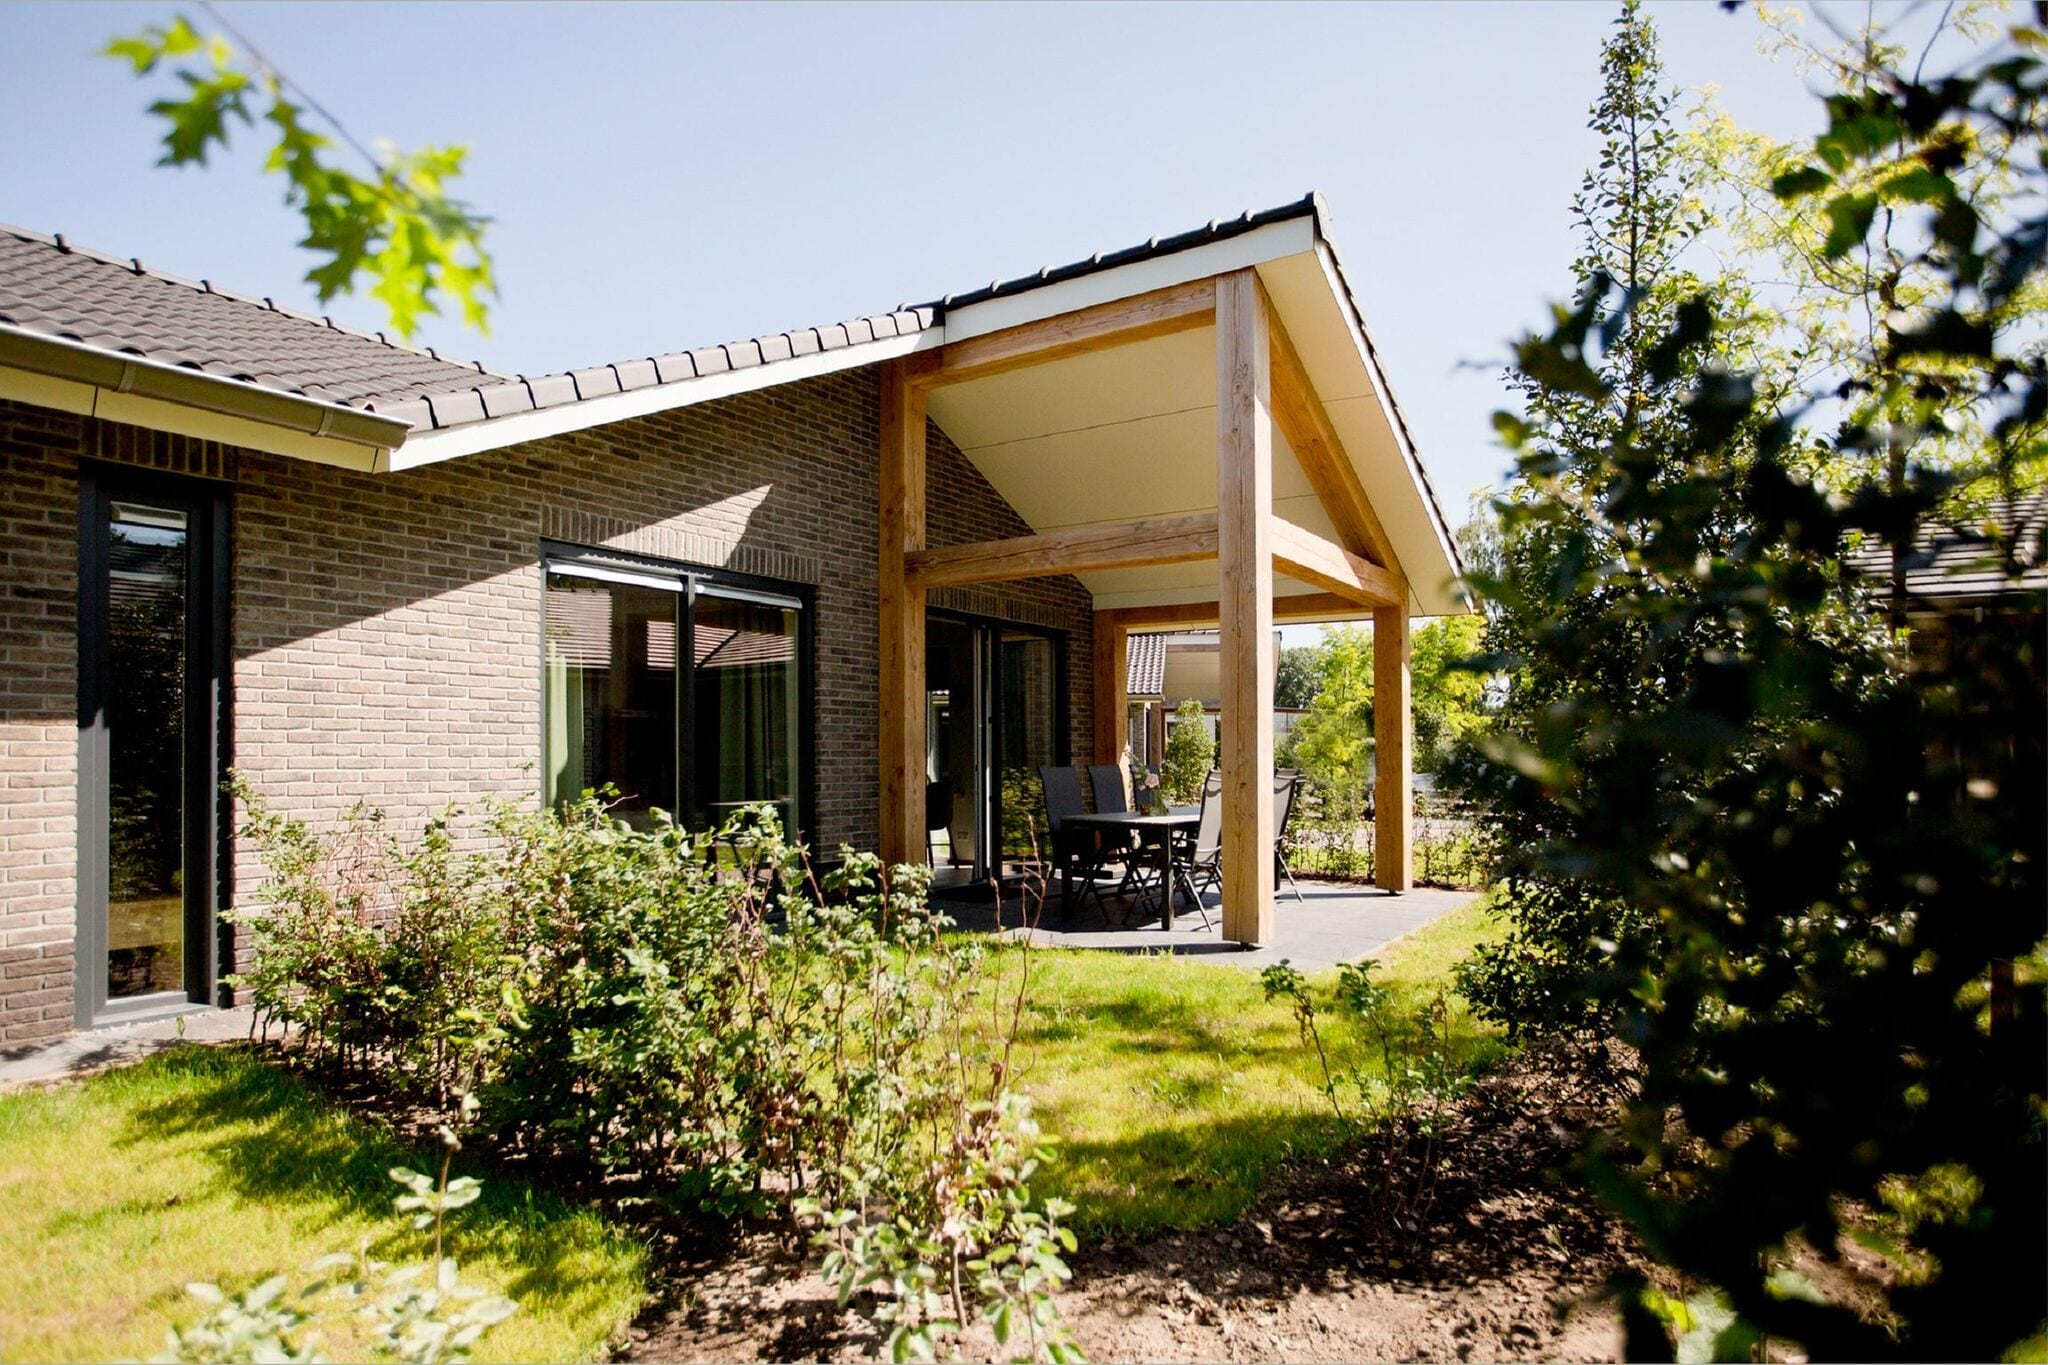 Joli bungalow avec terrasse couverte